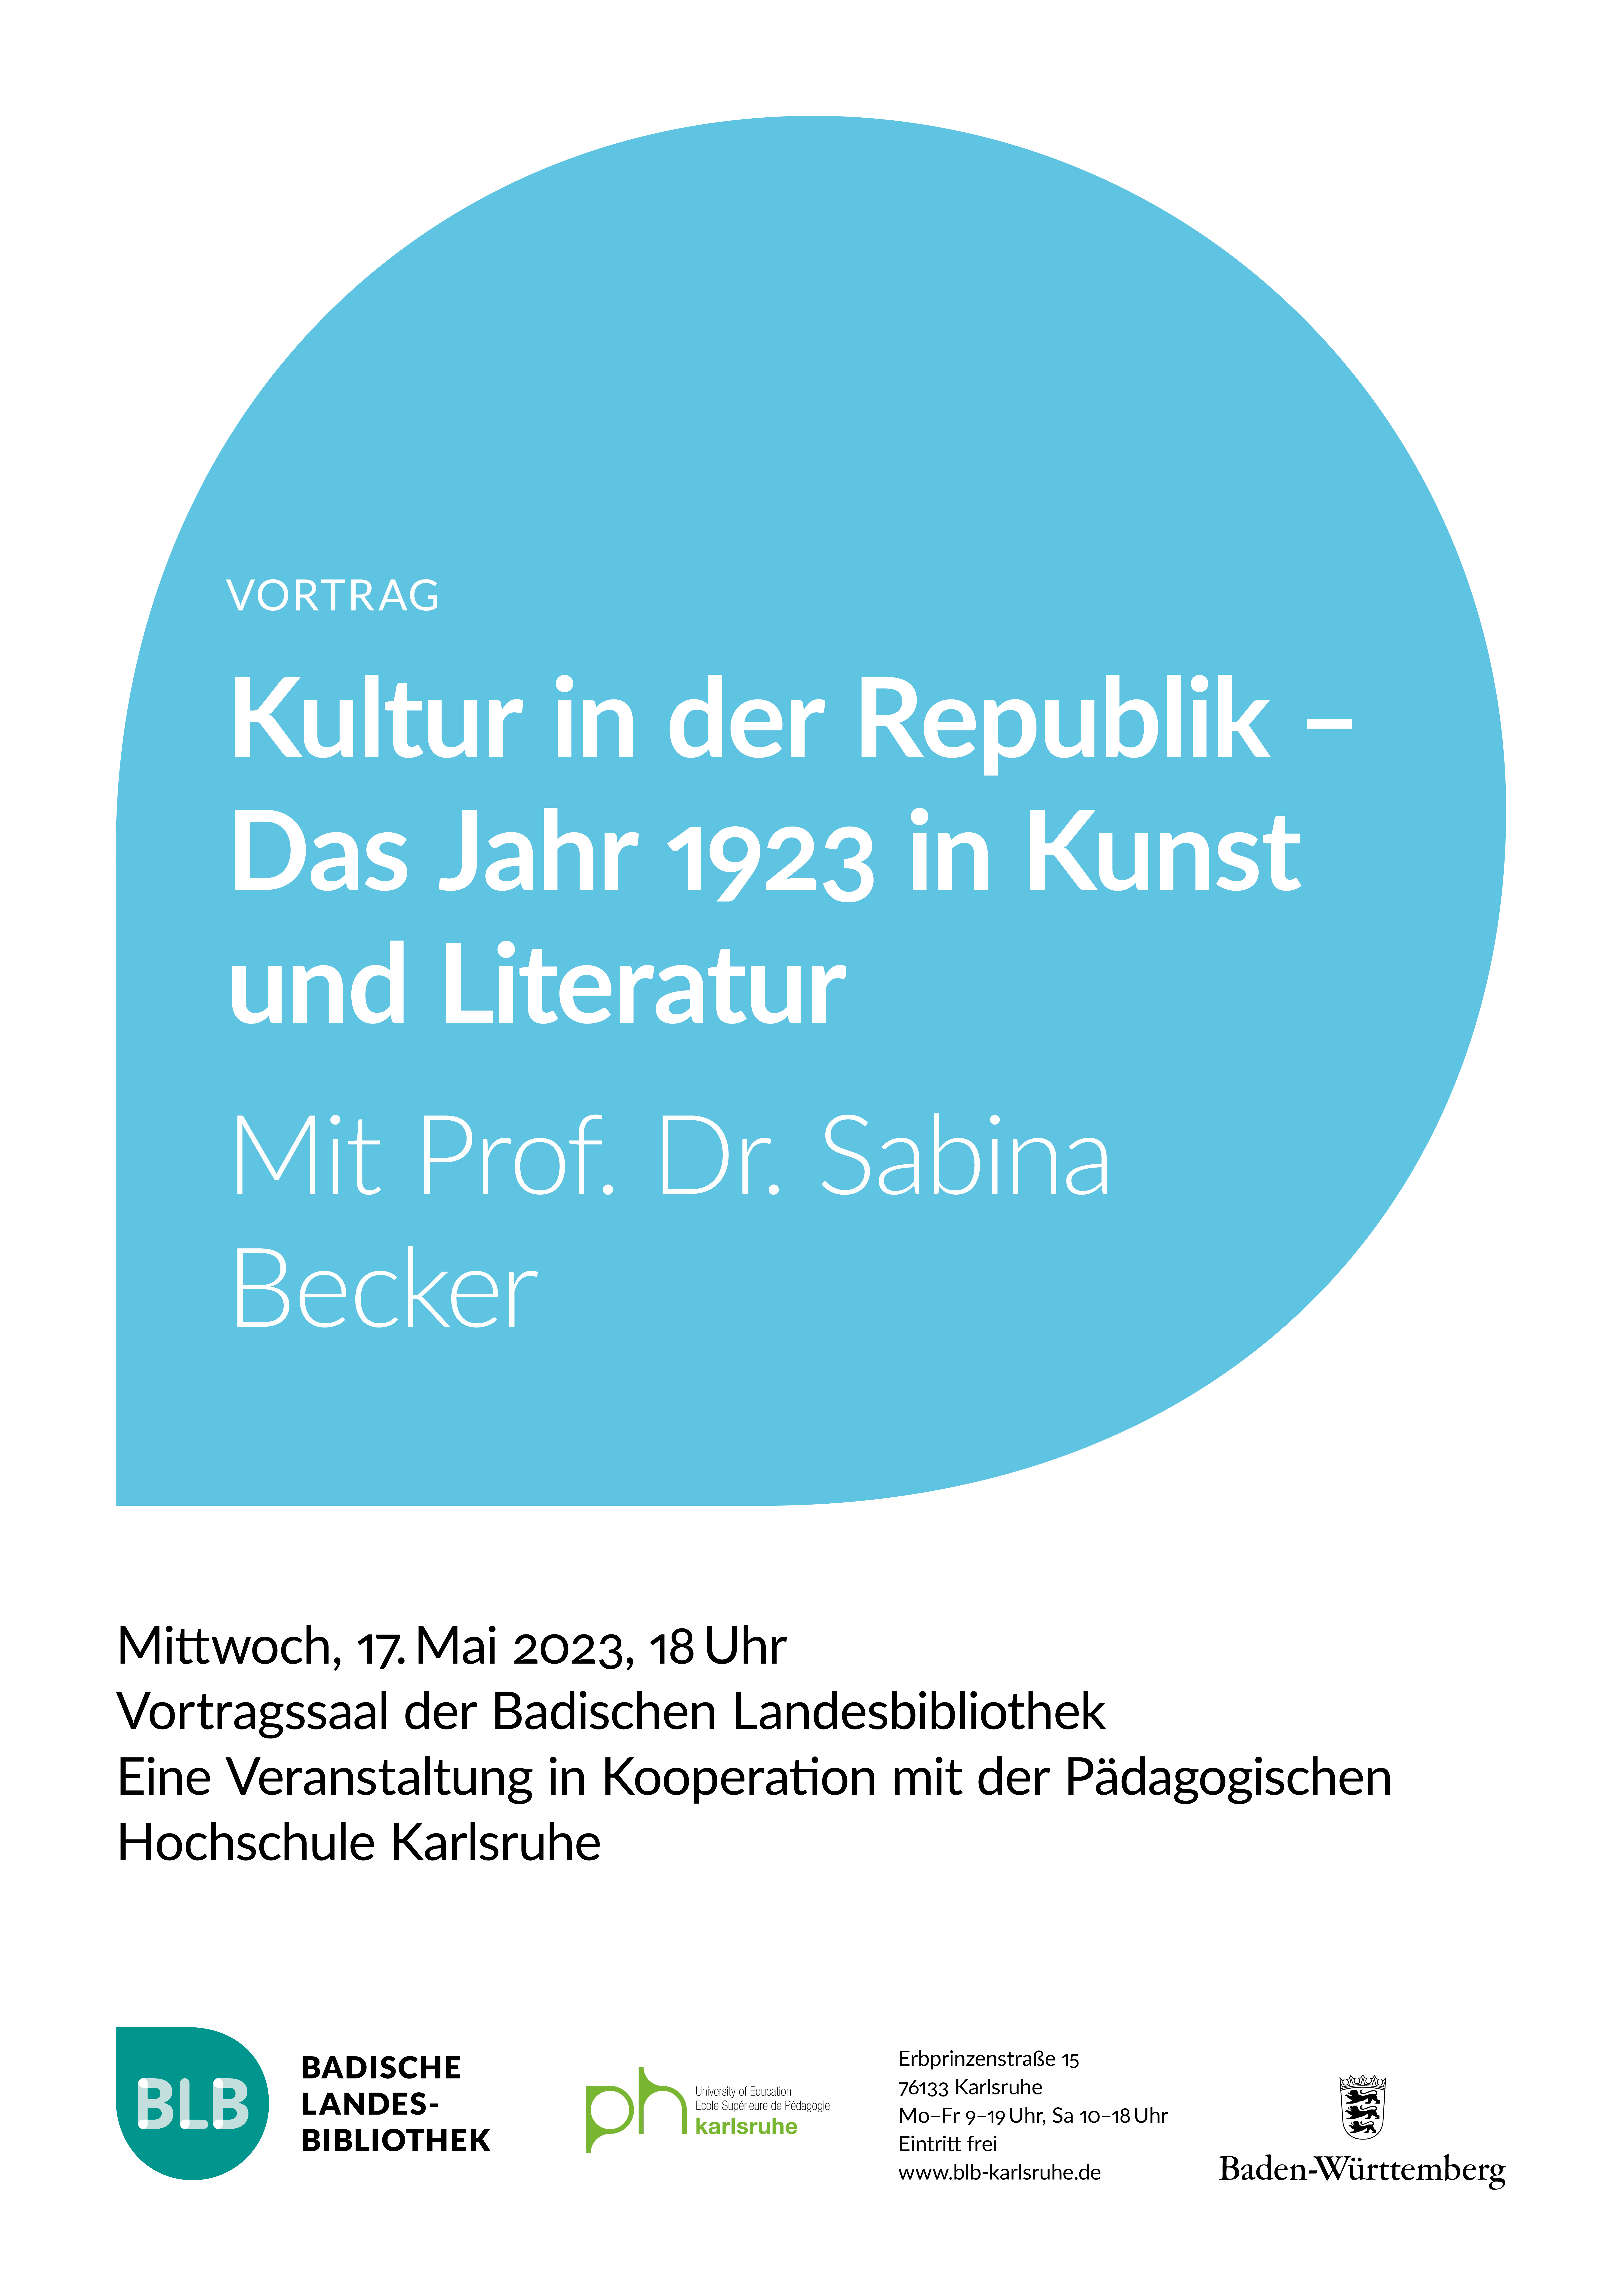 Zu sehen ist ein blaues Monogon mit der Aufschrift "Kultur in der Republik - Das Jahr 1923 in Kunst und Literatur". Der Vortrag mit Professorin Dr. Sabina Becker findet am Mittwoch, den 17. Mai 2023 um 18 Uhr statt. 